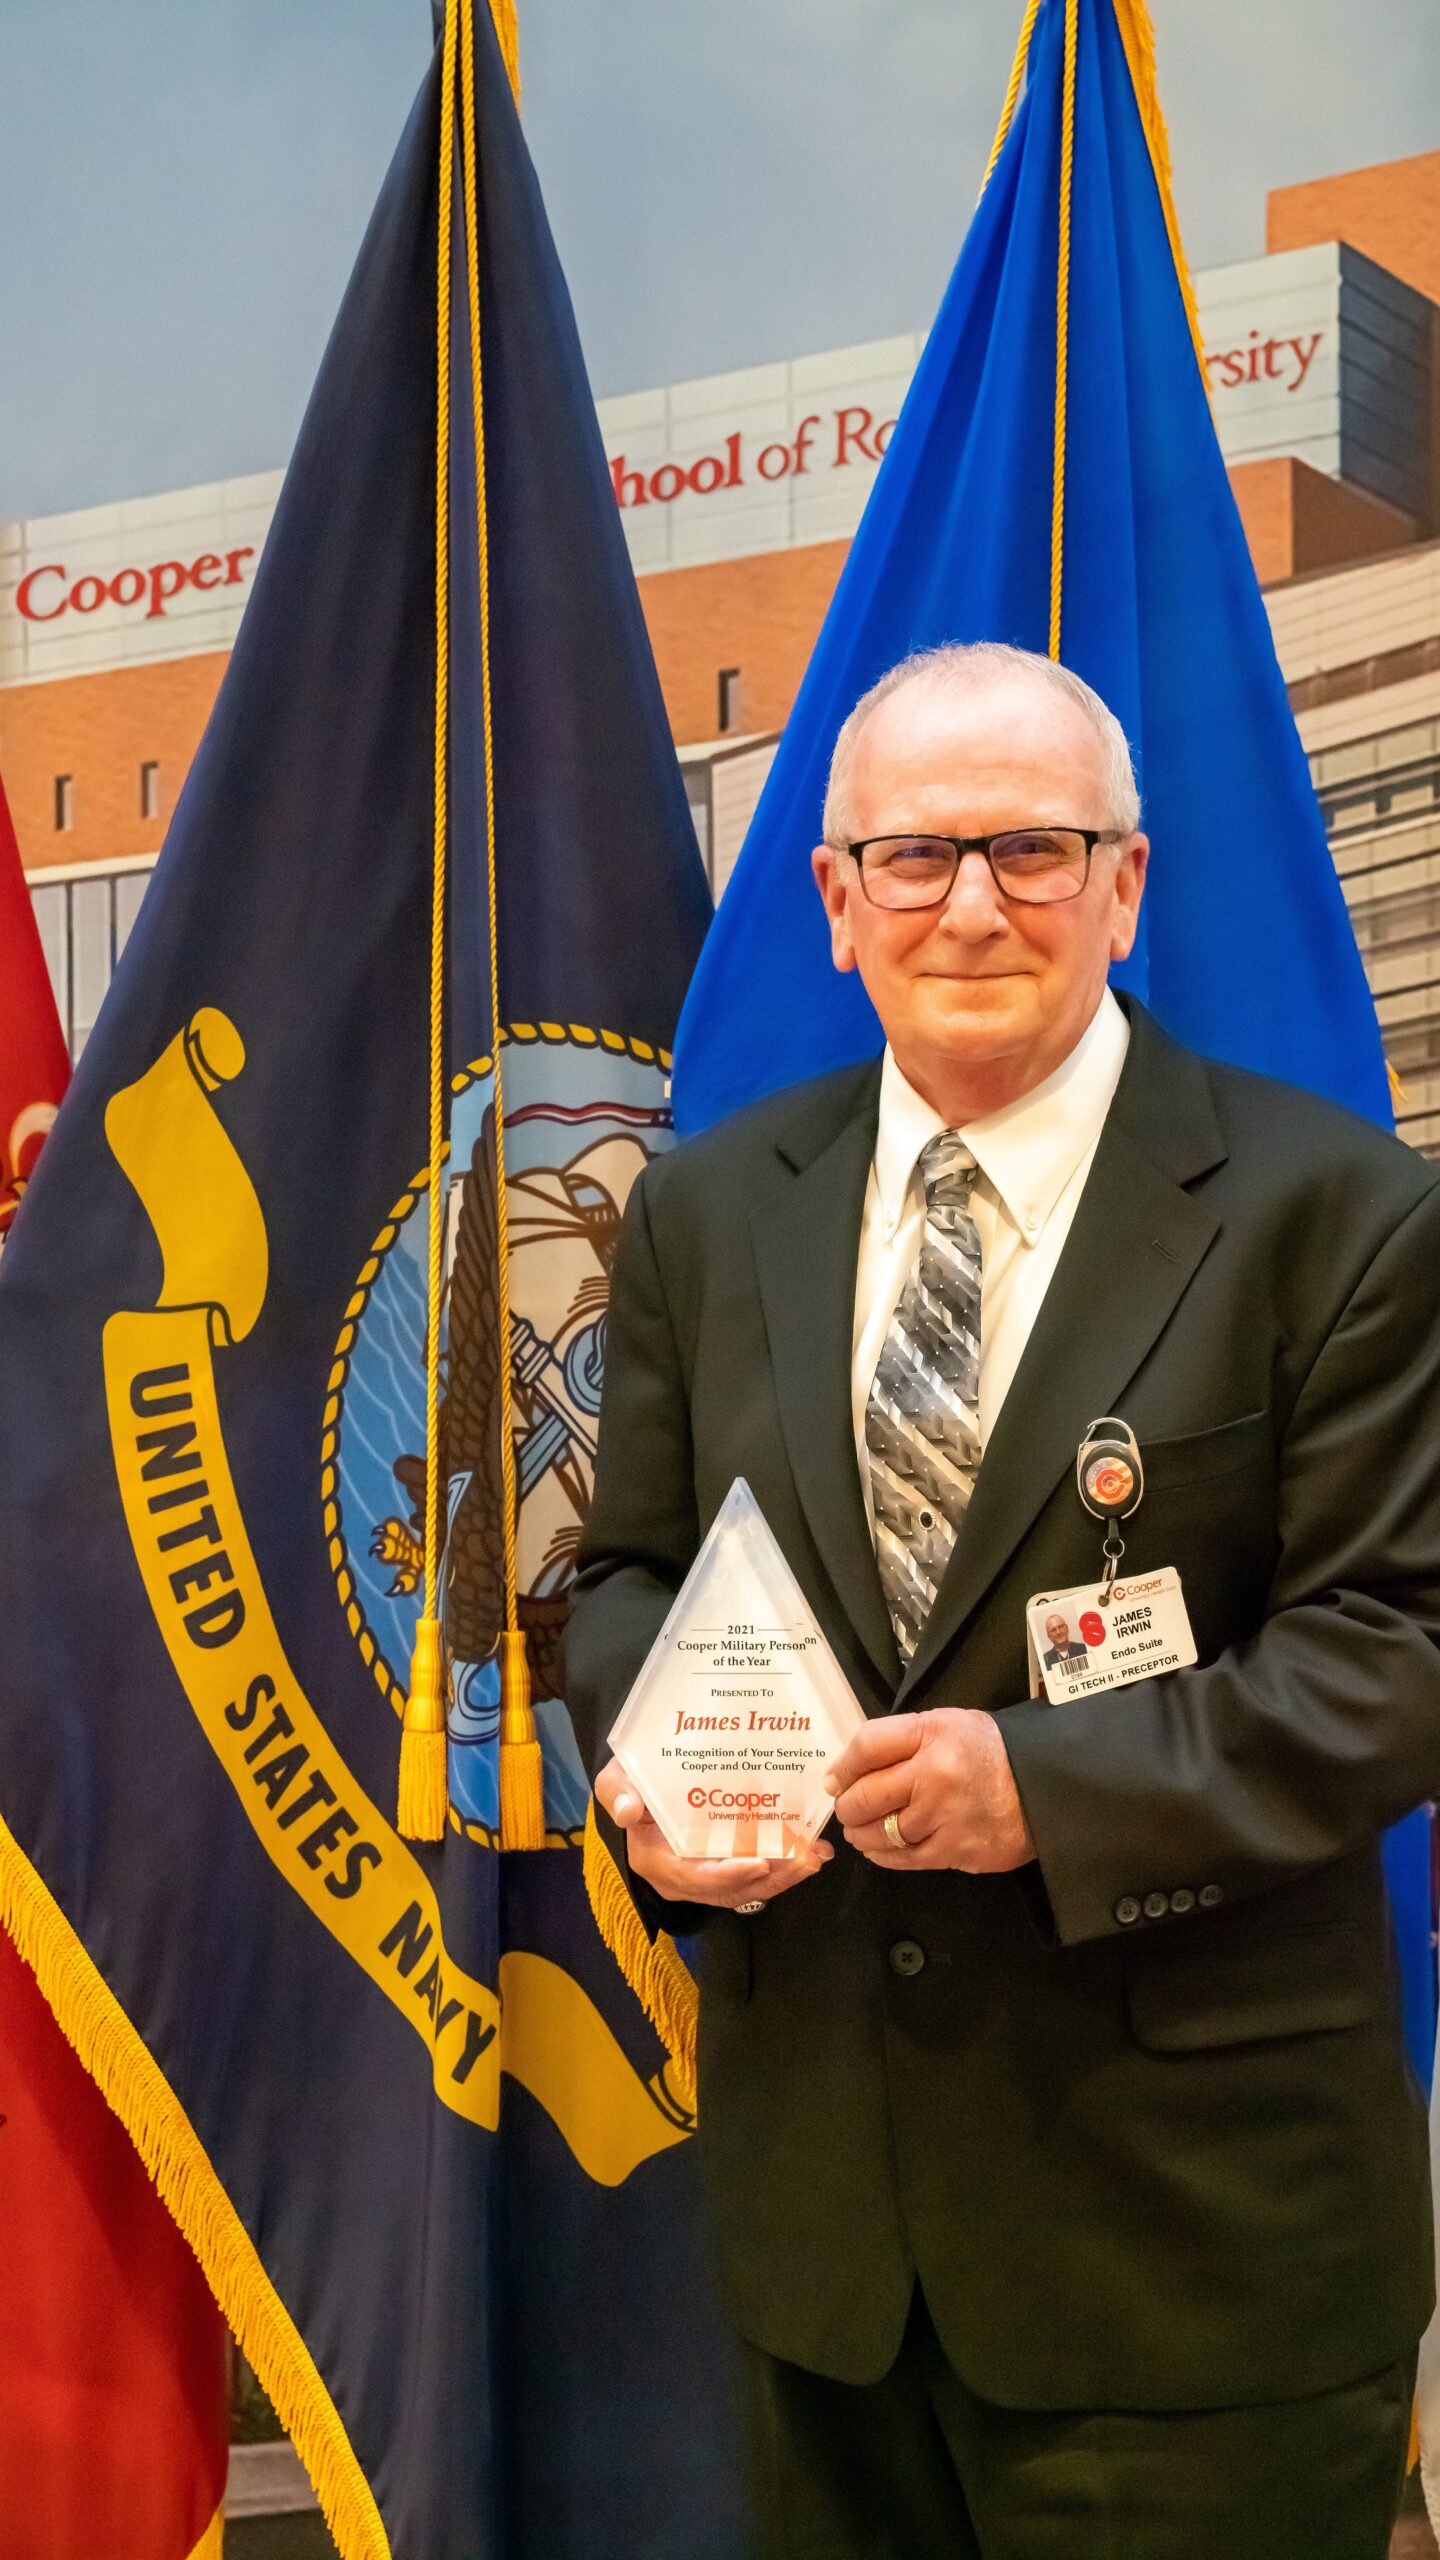 U.S. Navy Veteran James Irwin Named 2021 Recipient of the Cooper